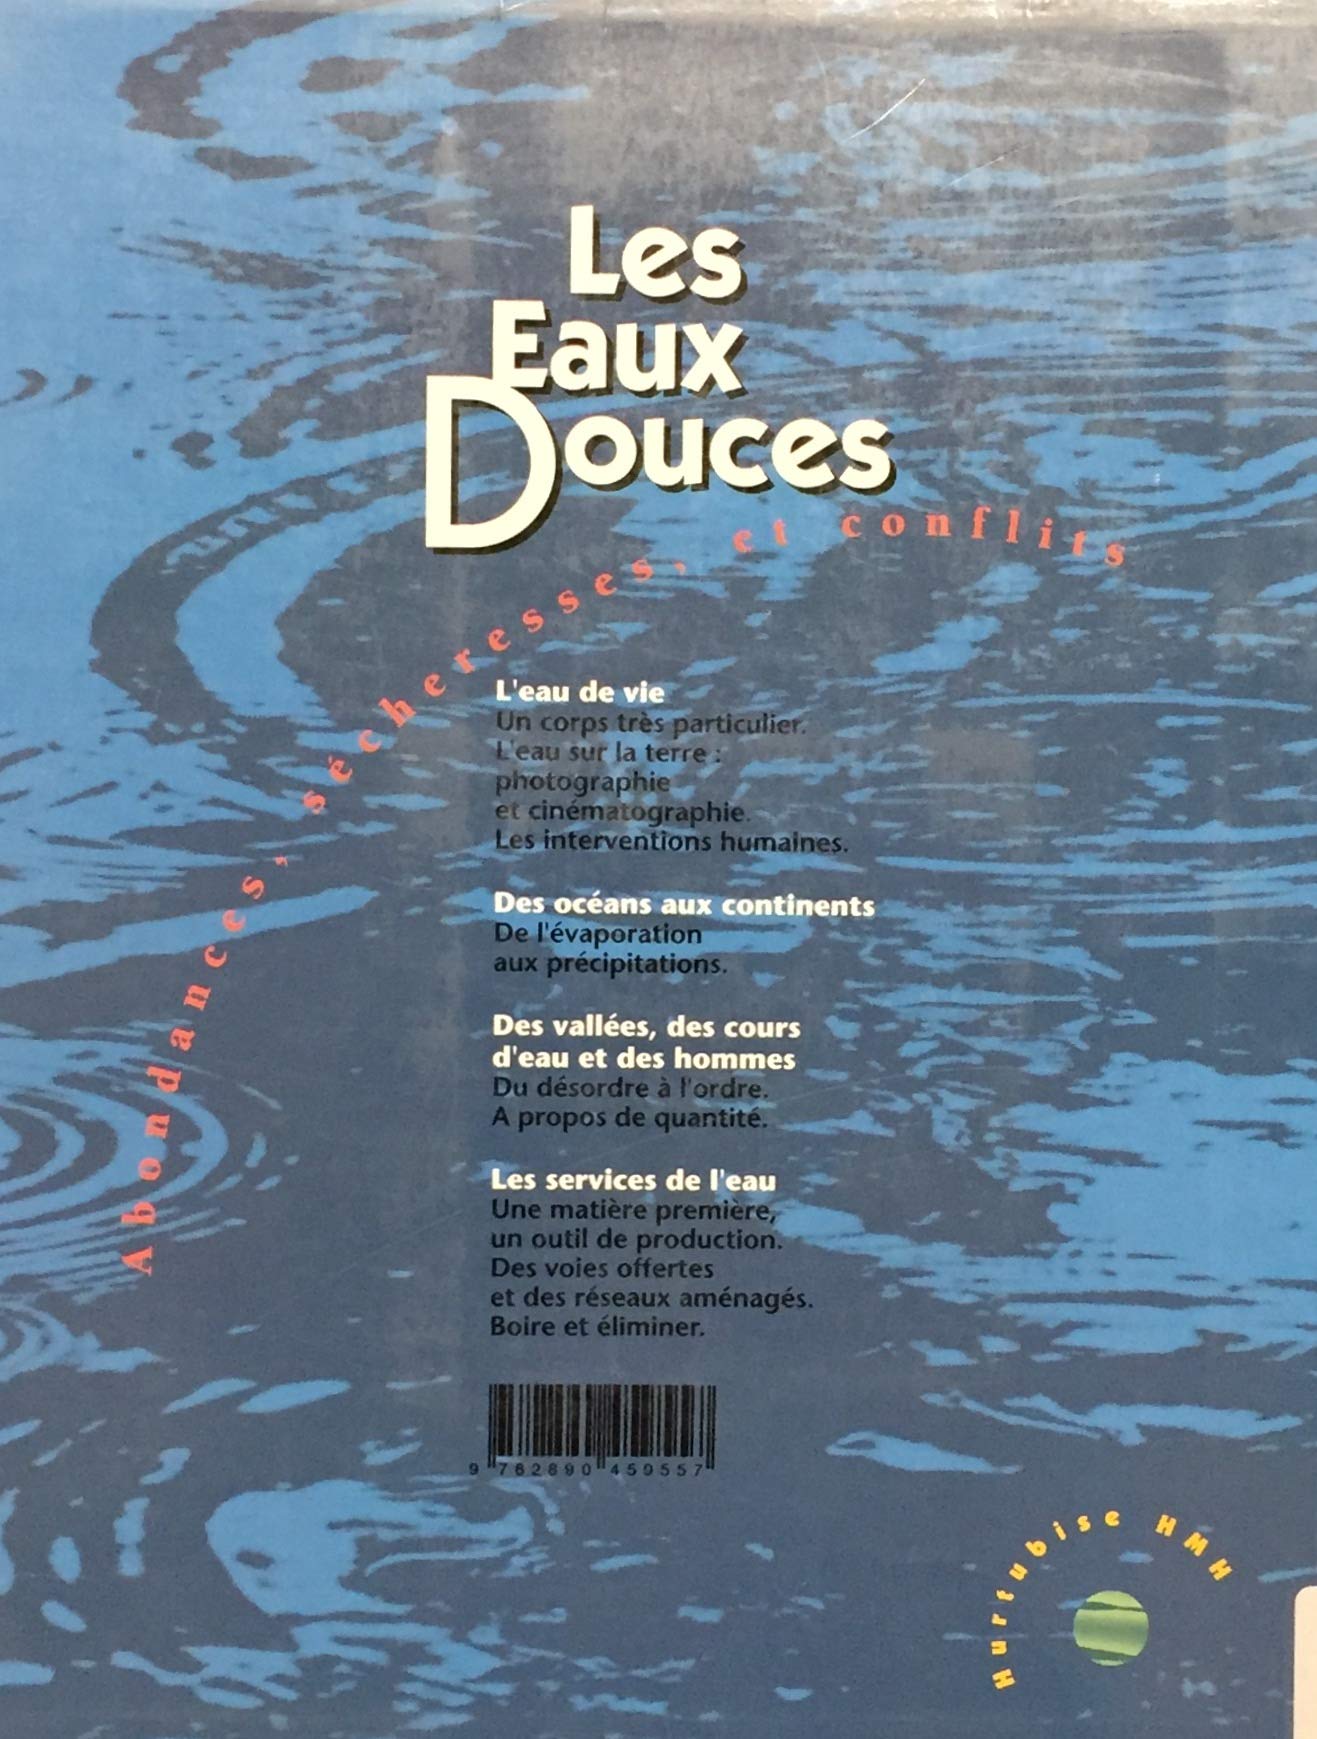 Écosystèmes : Les Eaux Douces (François Durand-Dastes)